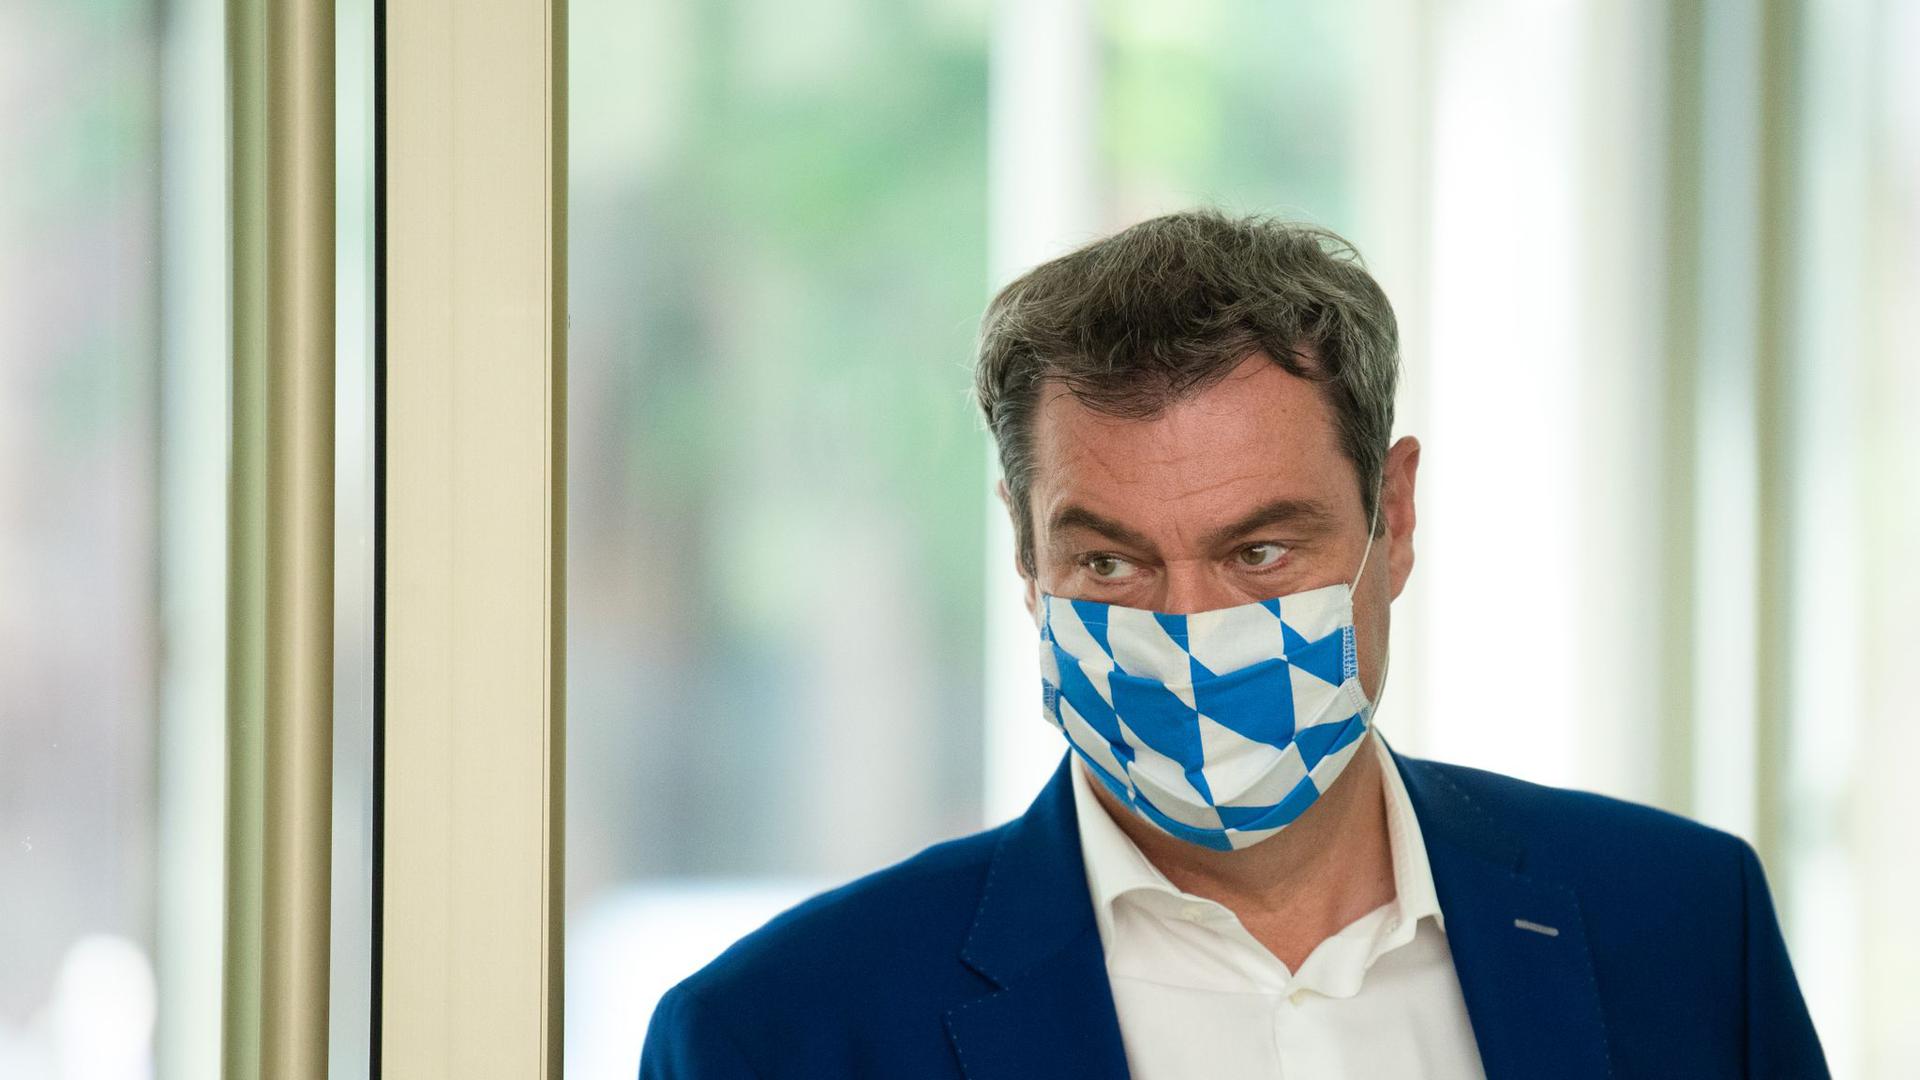 Markus Söder (CSU) mit Maske in bayerischen Landesfarben.